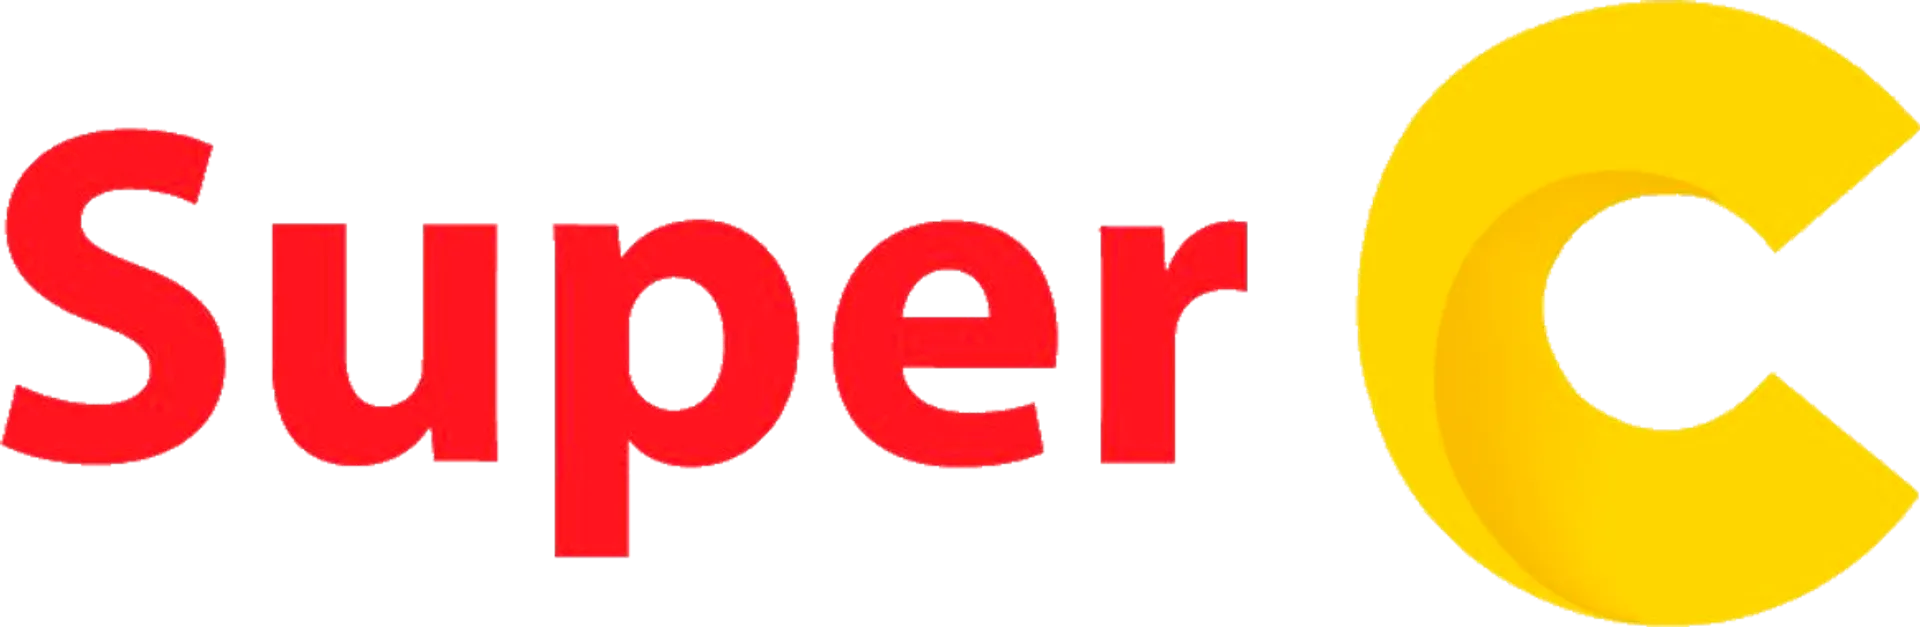 SUPER C logo de circulaire